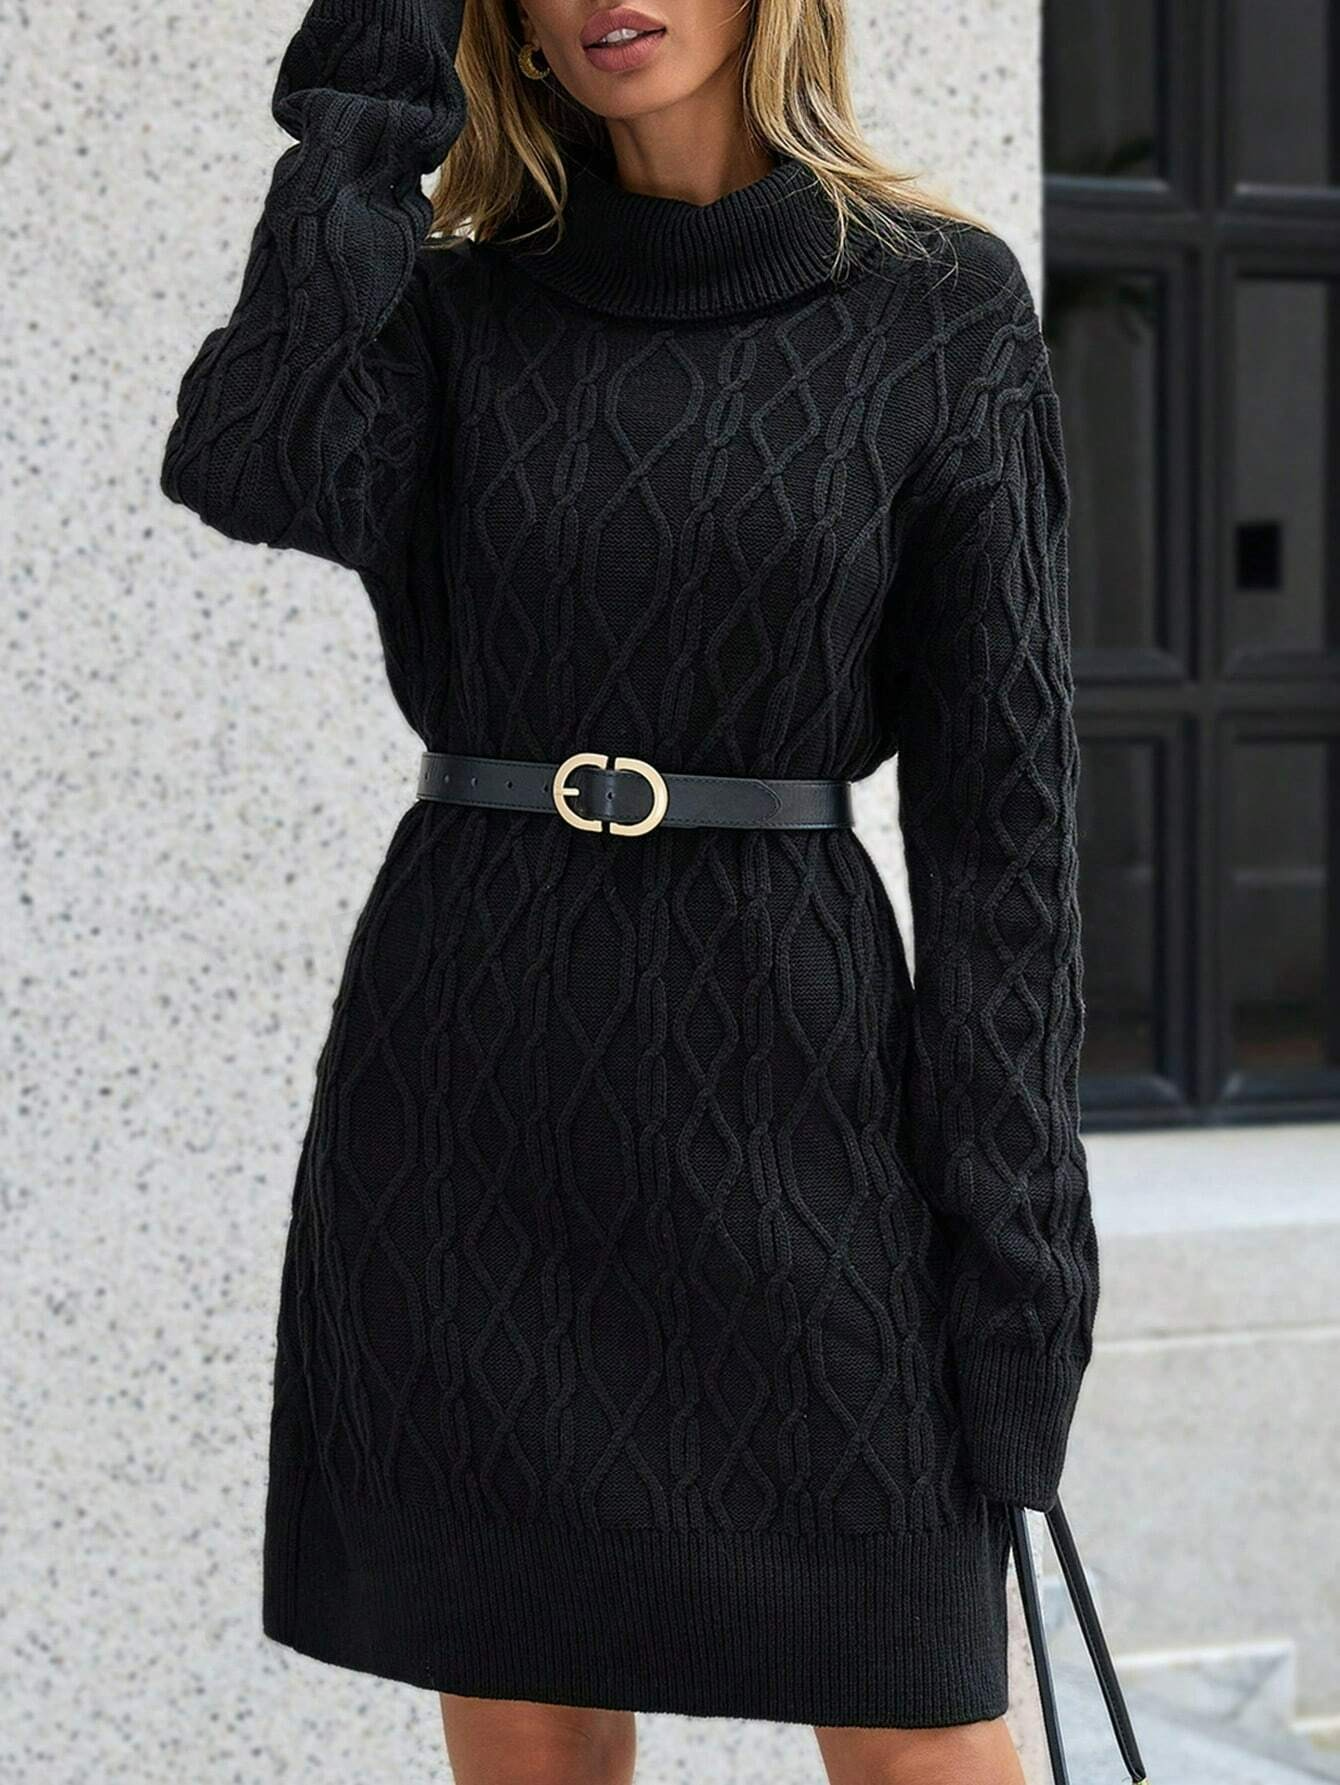 Rochie mini din tricot, cu maneca lunga si model, negru, dama, Shein